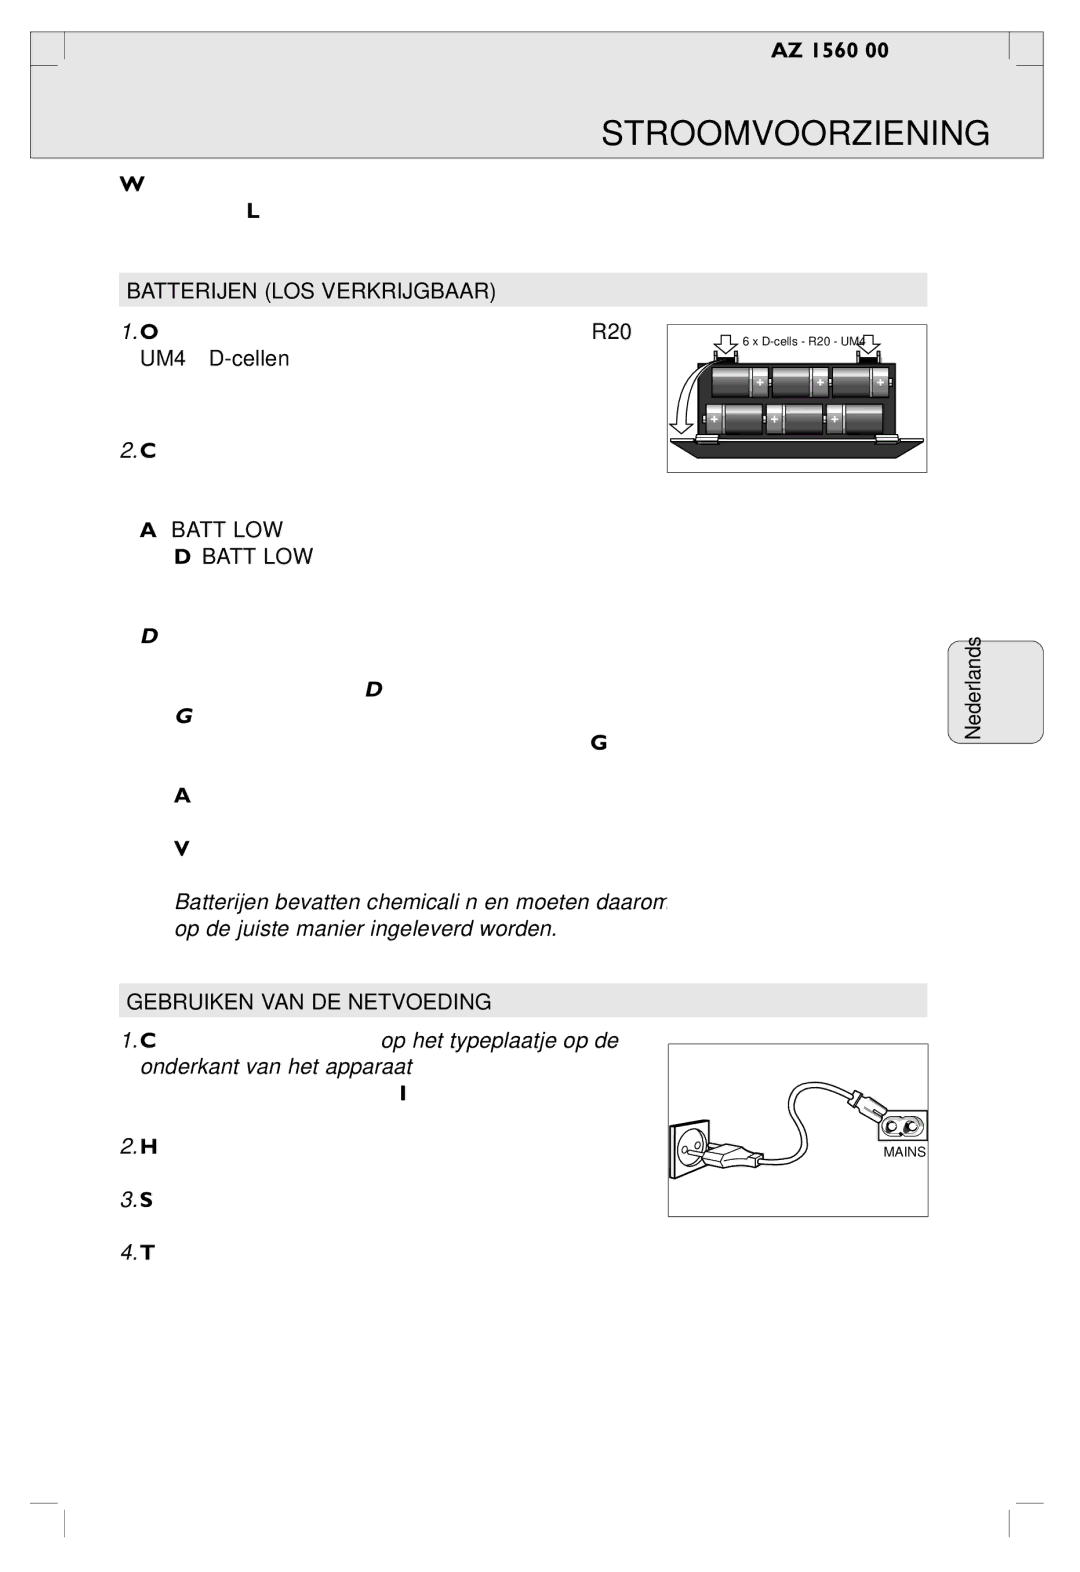 Philips AZ 1560/00 manual Stroomvoorziening, Batterijen LOS Verkrijgbaar, Gebruiken VAN DE Netvoeding 